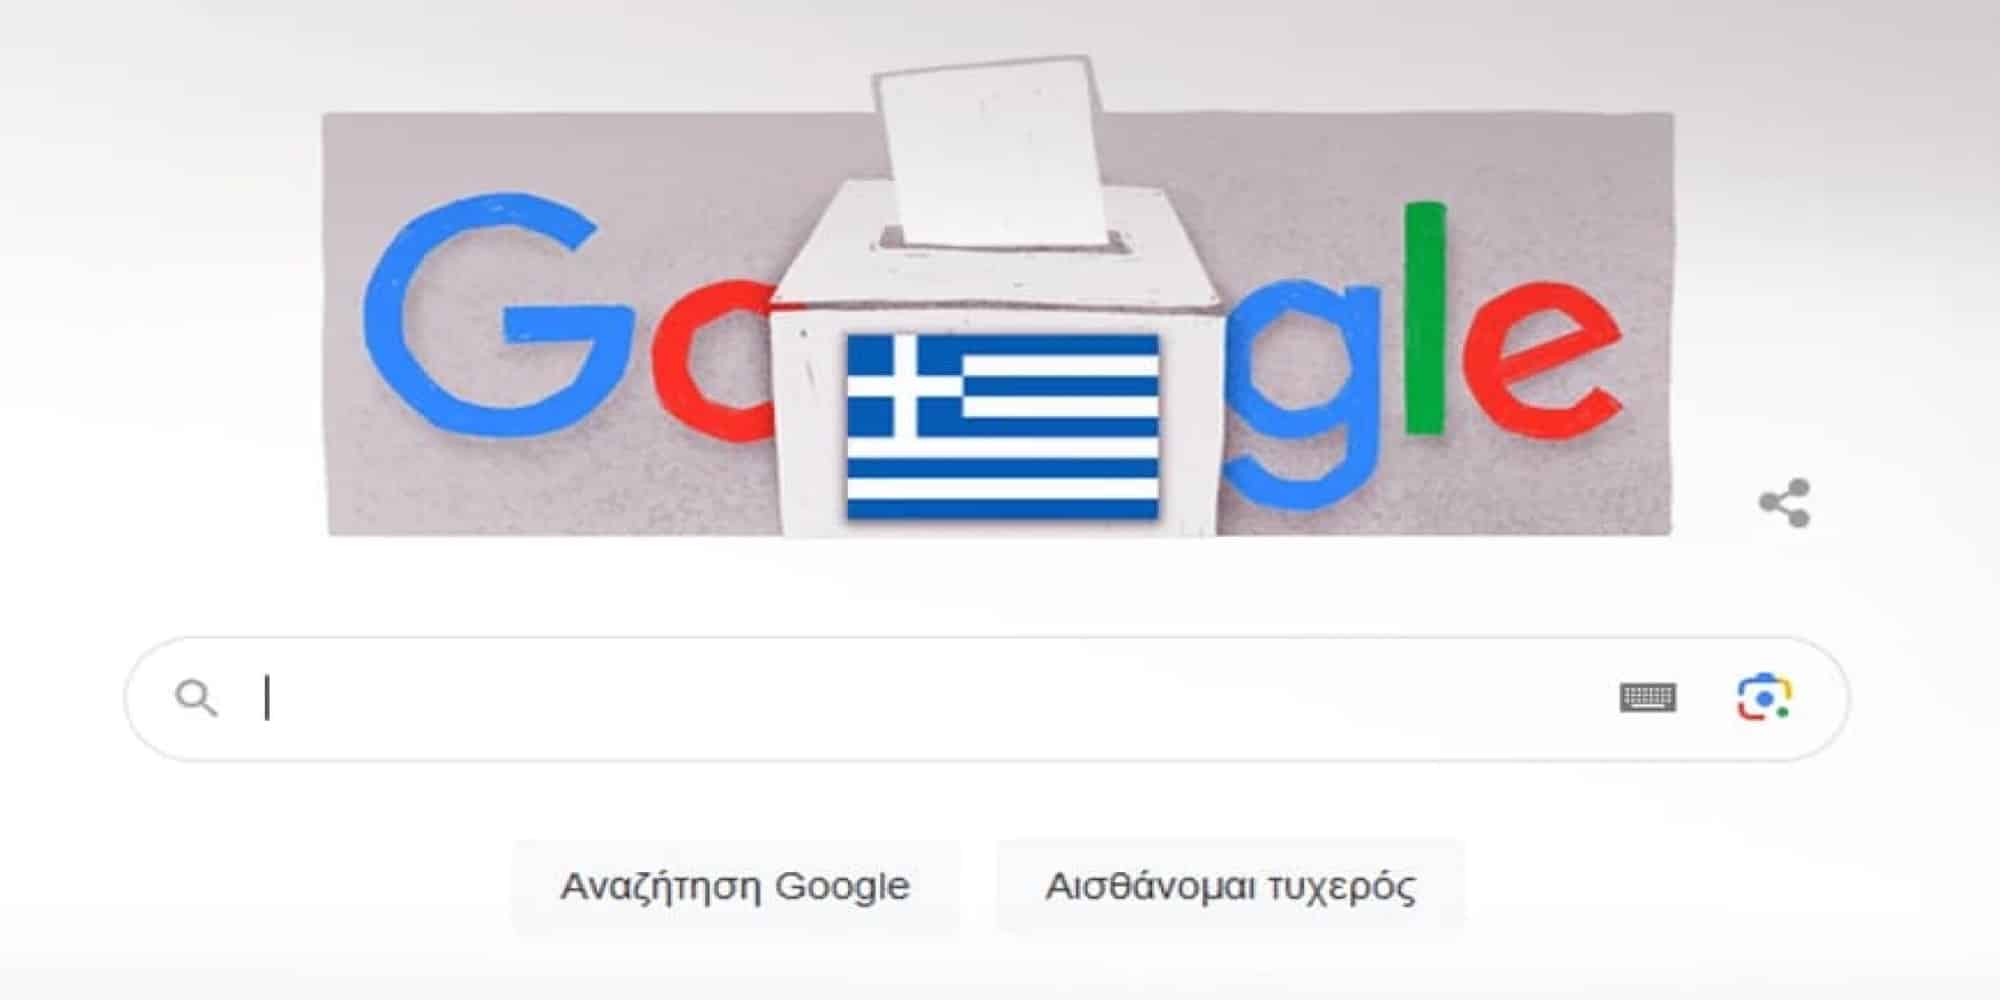 Το doodle της Google είναι αφιερωμένο στις εκλογές στην Ελλάδα